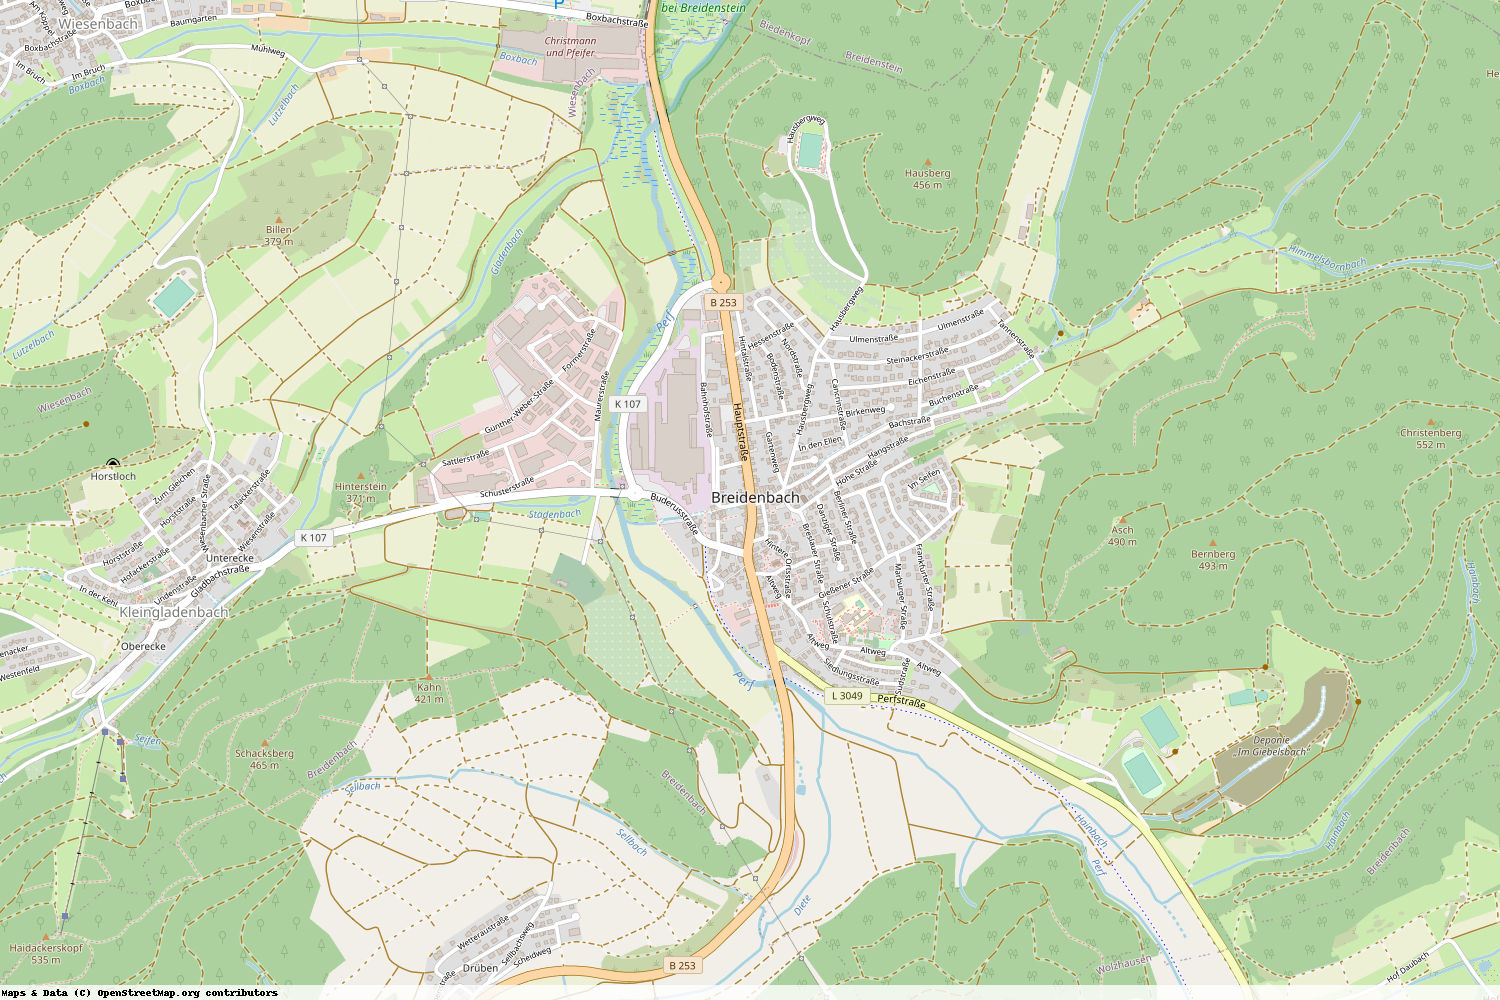 Ist gerade Stromausfall in Hessen - Marburg-Biedenkopf - Breidenbach?